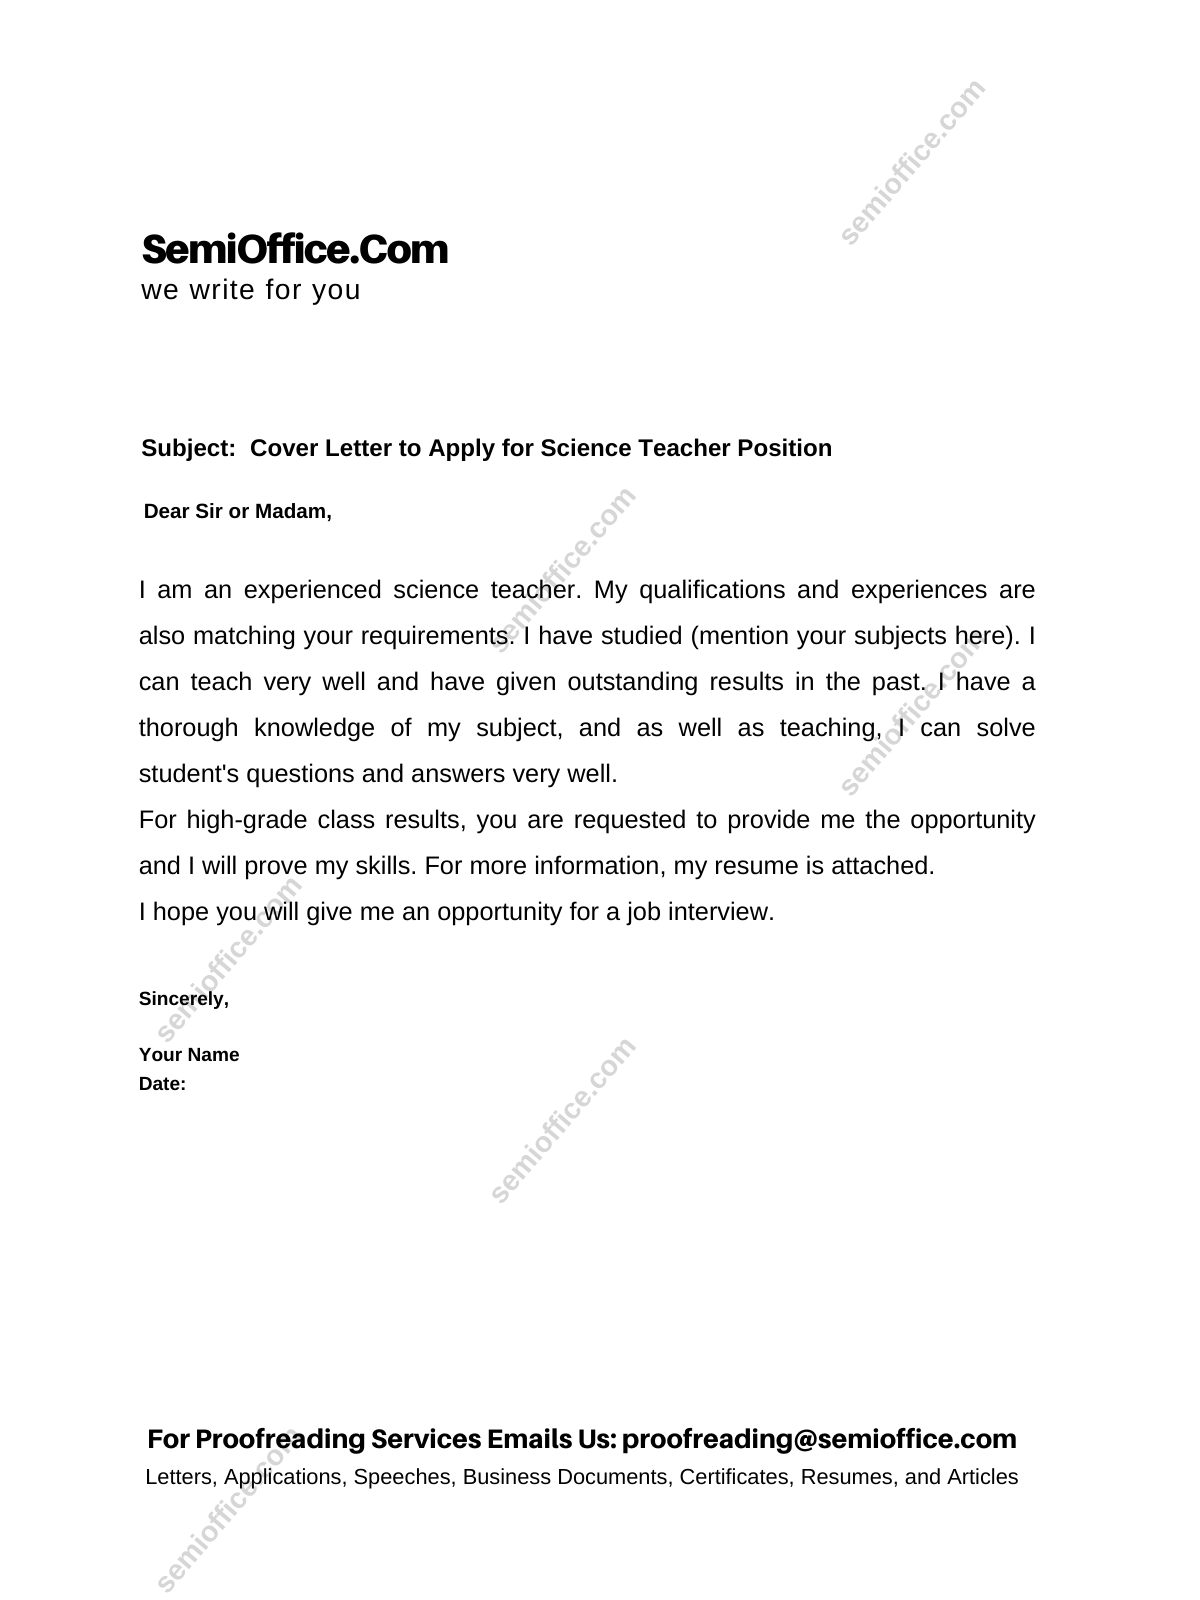 sample cover letter for science teacher